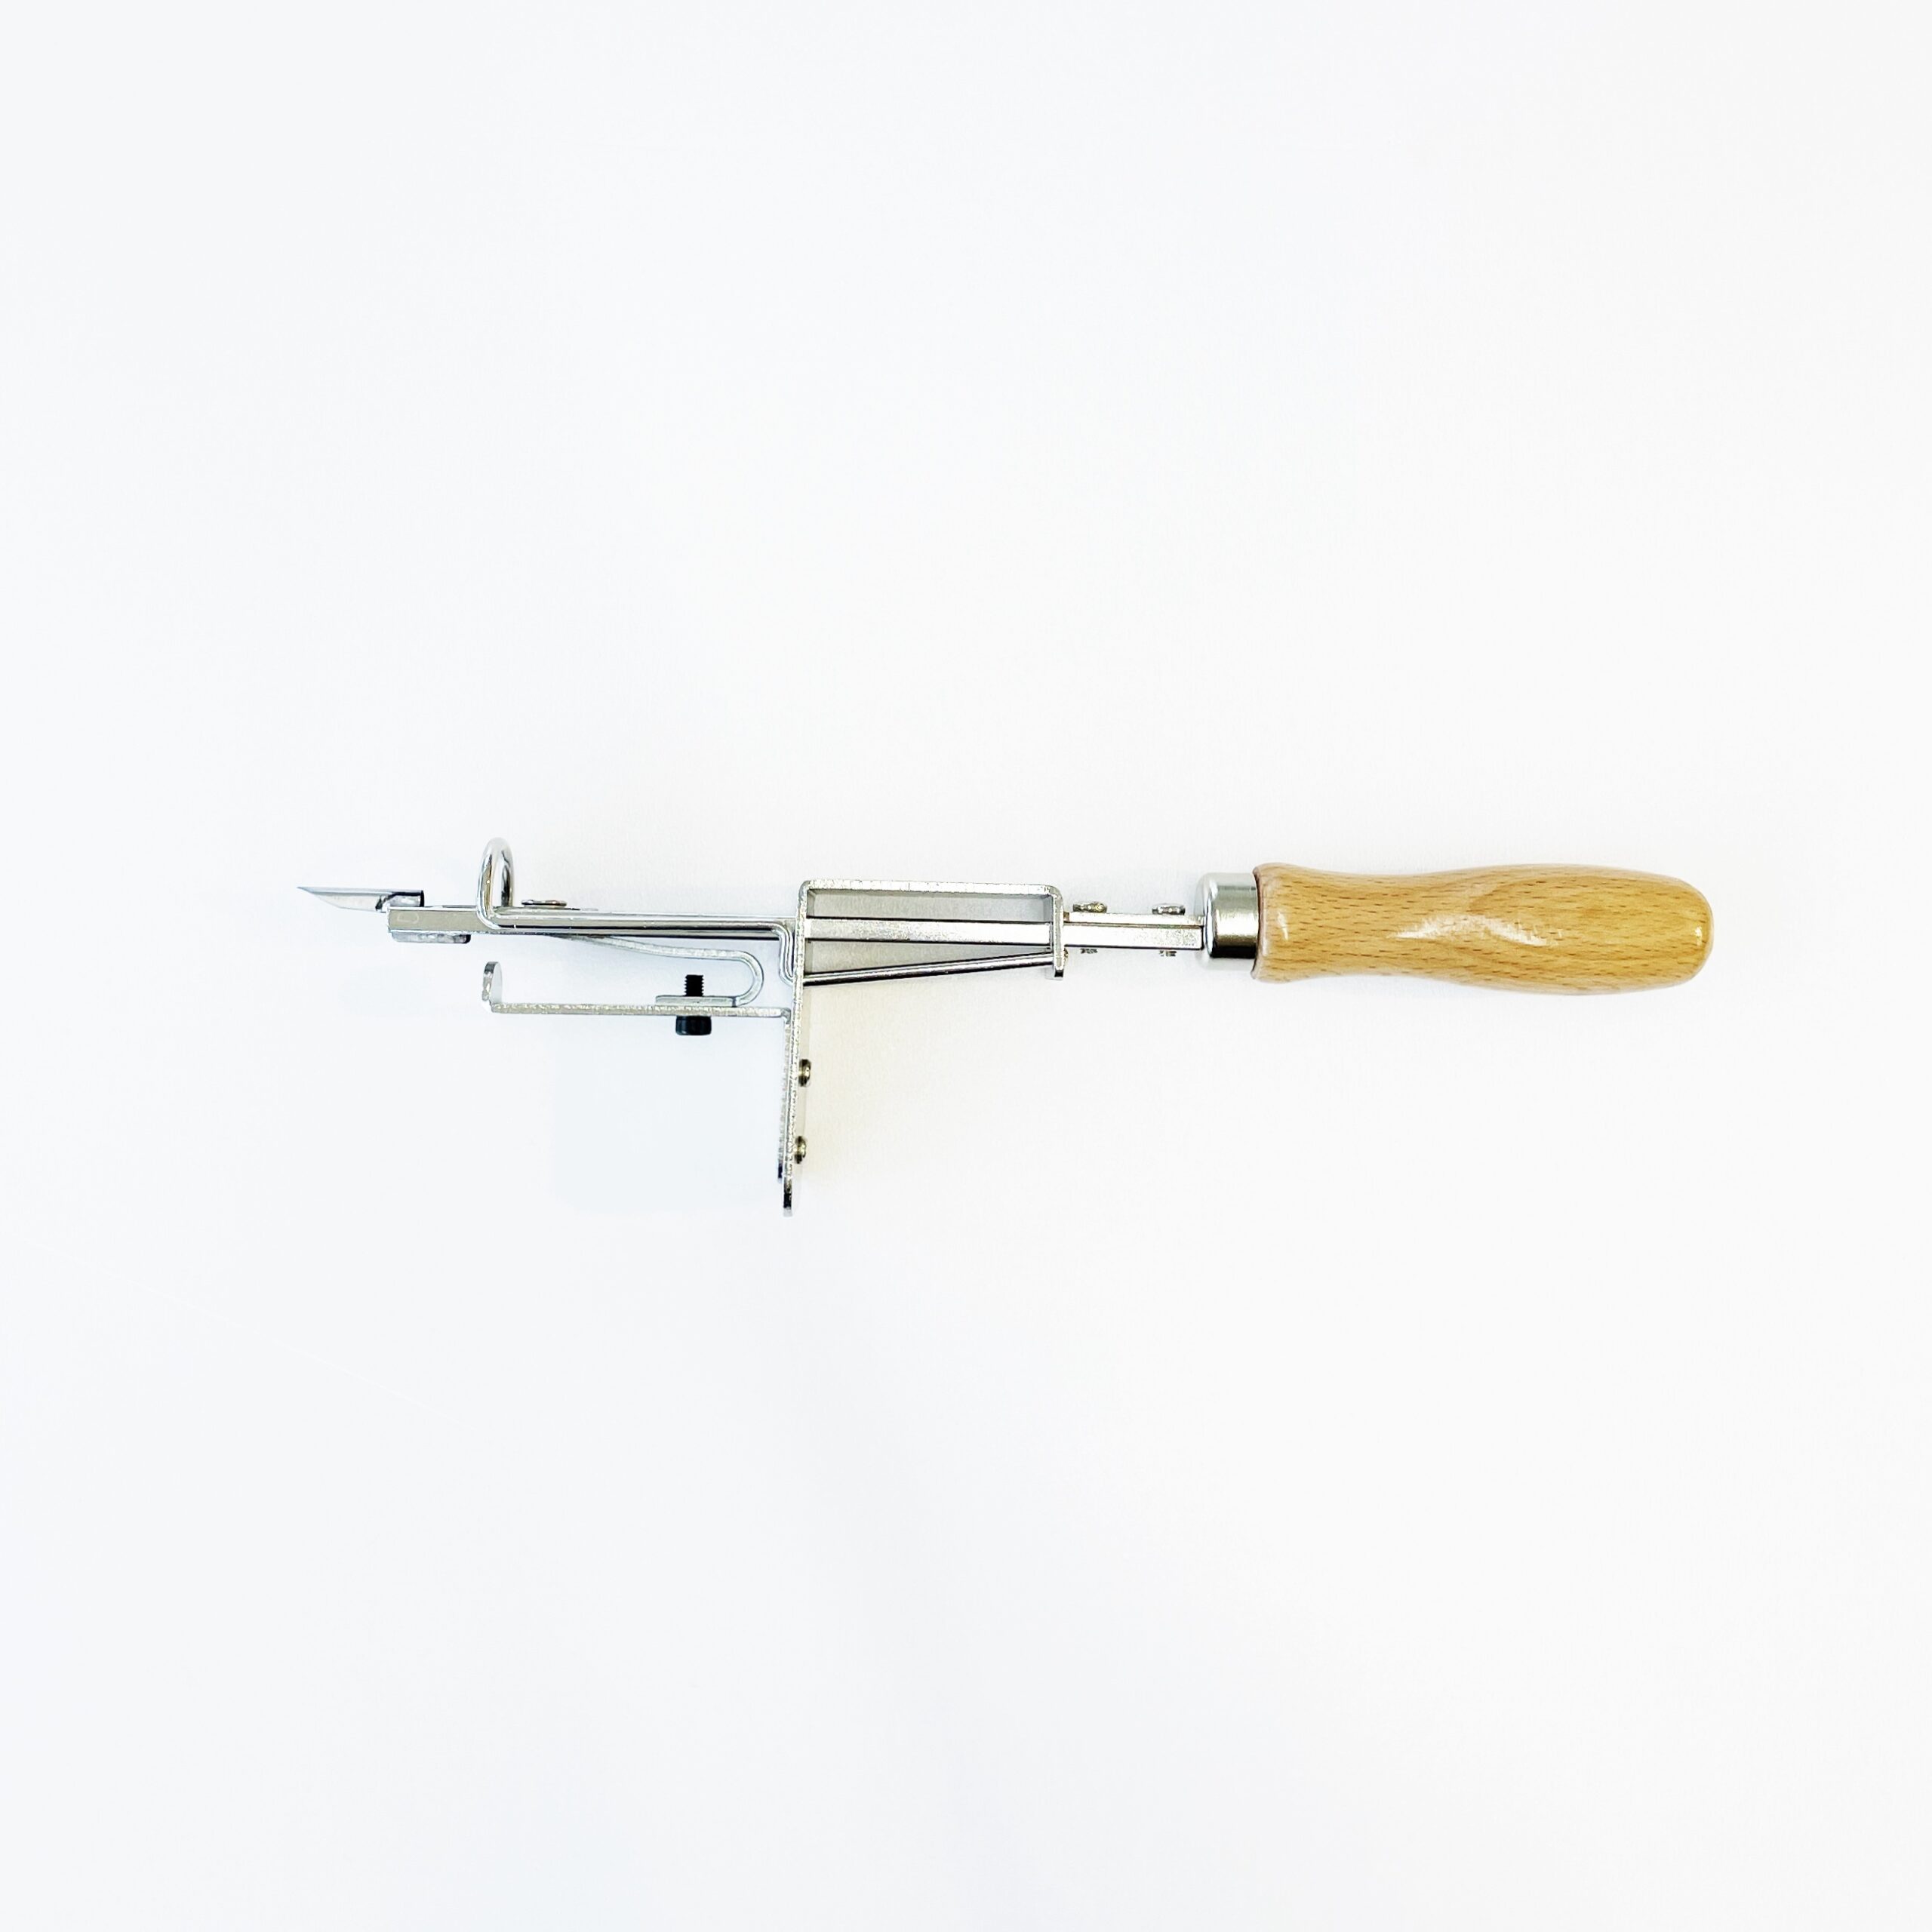 Mini Manual Speed Tufting Tool – Adjustable pile height 3-13mm